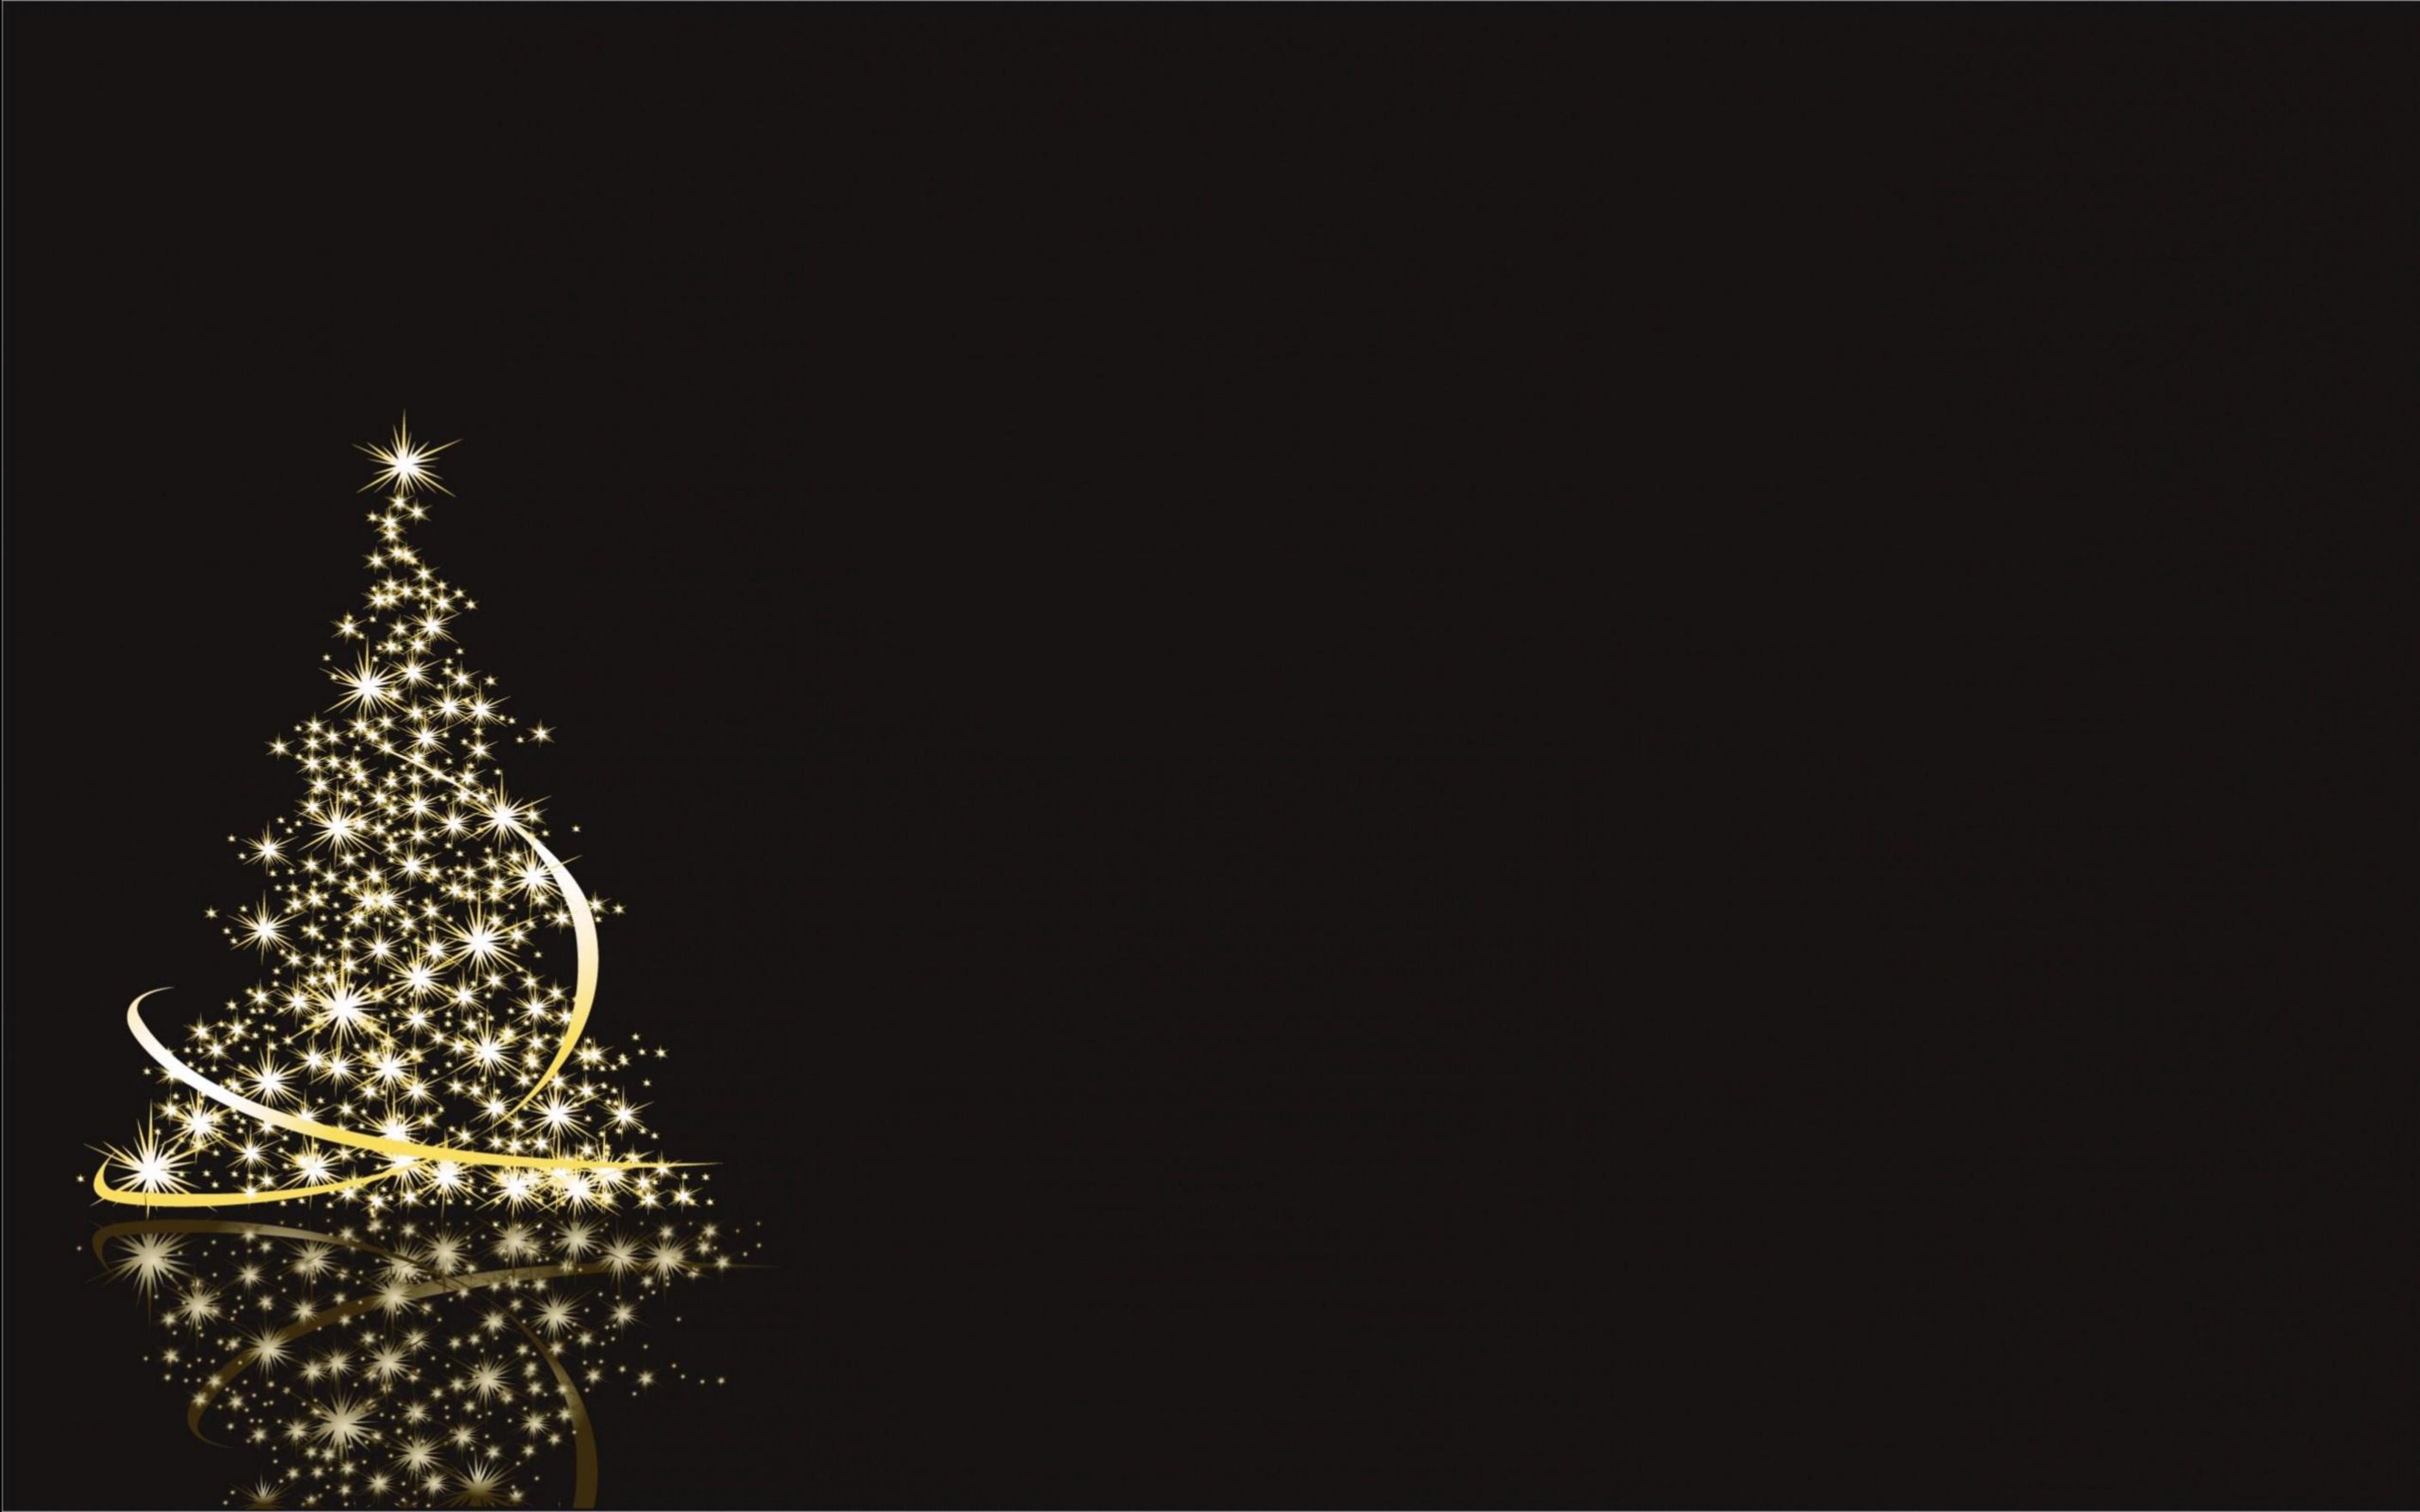 weihnachtstapete,weihnachtsbaum,weihnachtsdekoration,schwarz,baum,weihnachtsbeleuchtung